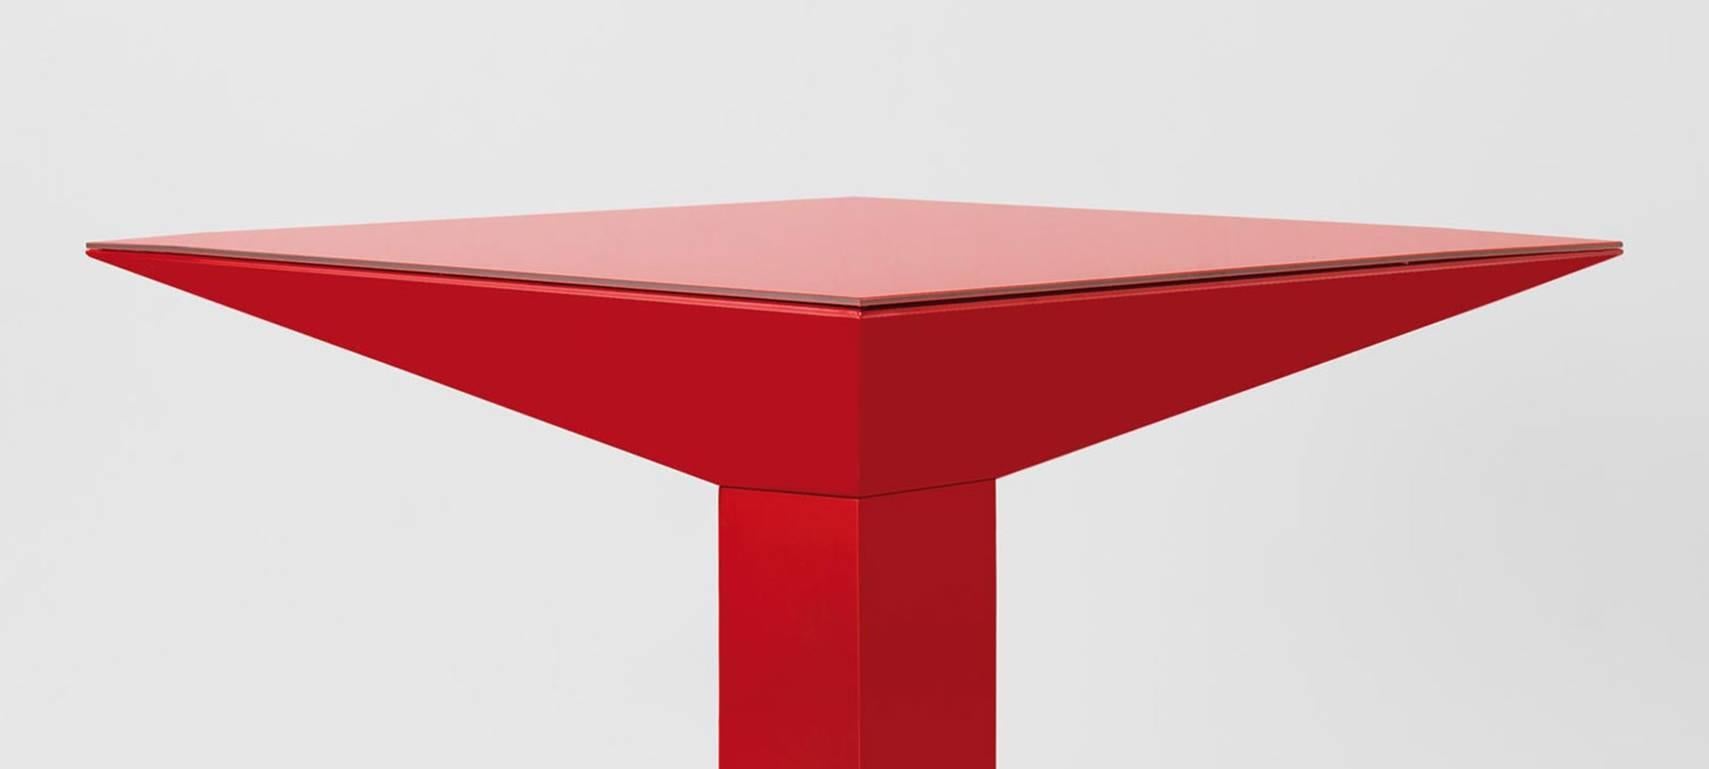 Mettsass-Tisch, entworfen von Ettore Sottsass in Barcelona, hergestellt von BD.

Die Struktur besteht aus flachen Stahlblechen, lackiert in Rot RAL 3001. Das Glas ist in der gleichen Farbe wie die Struktur lackiert.

Maße: 110 x 110 x H 73